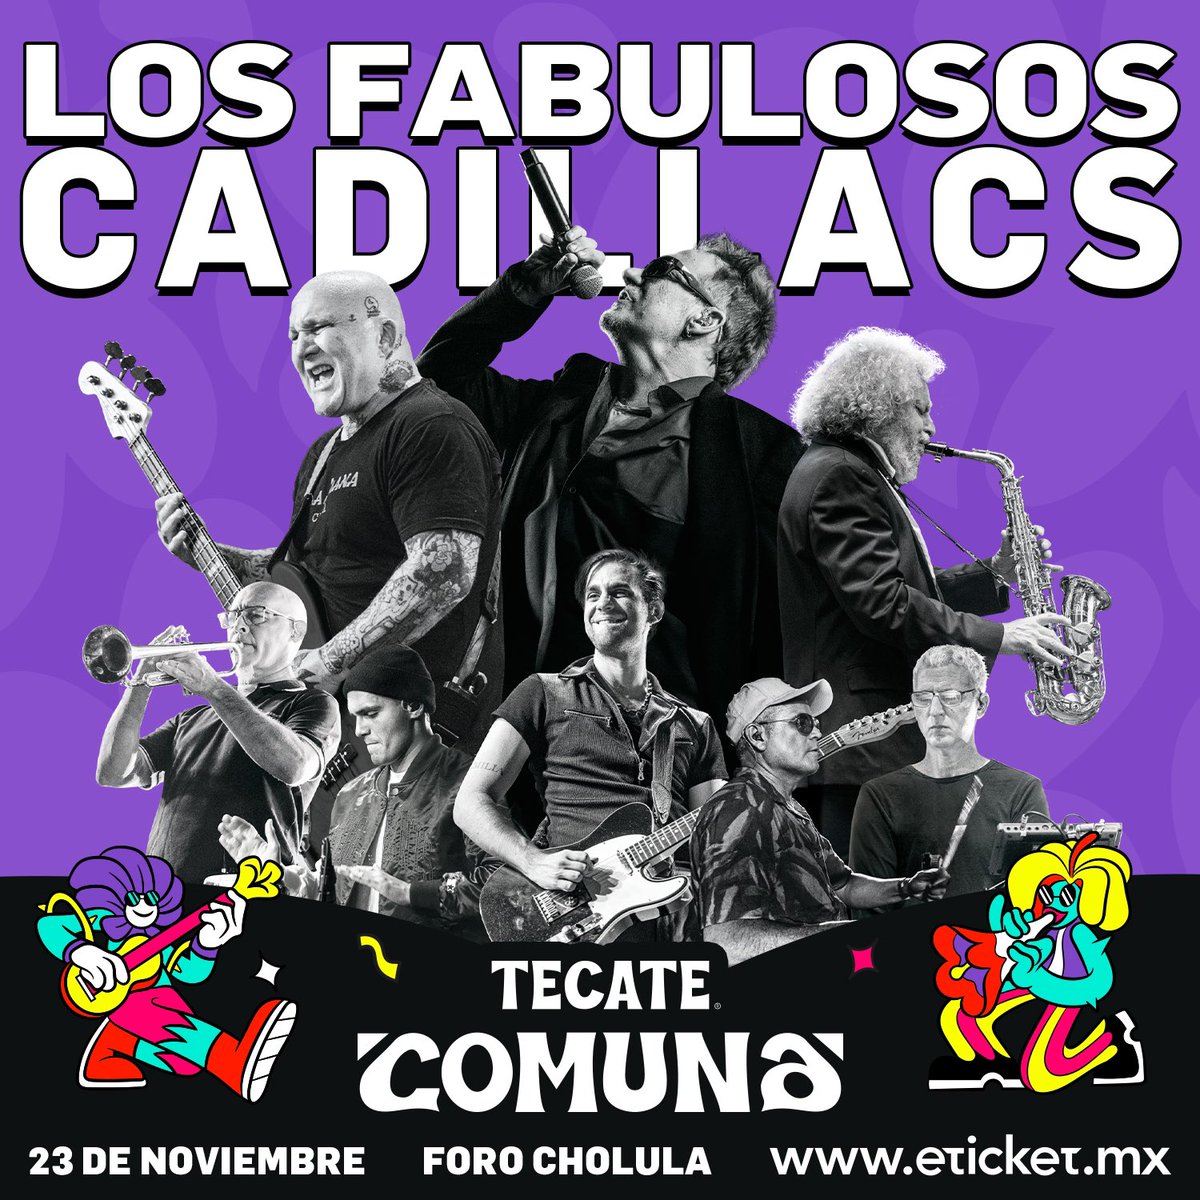 ¡LOS FABULOSOS CADILLACS! 🛞 Una de las bandas más legendarias de toda Latinoamérica estará en  #TecateComuna 🔊 @lfcoficial 

💳 #PreventaCitibanamex 31 mayo
🎸 Venta General a partir del 1 junio
🌻 Boletos a través de Eticket